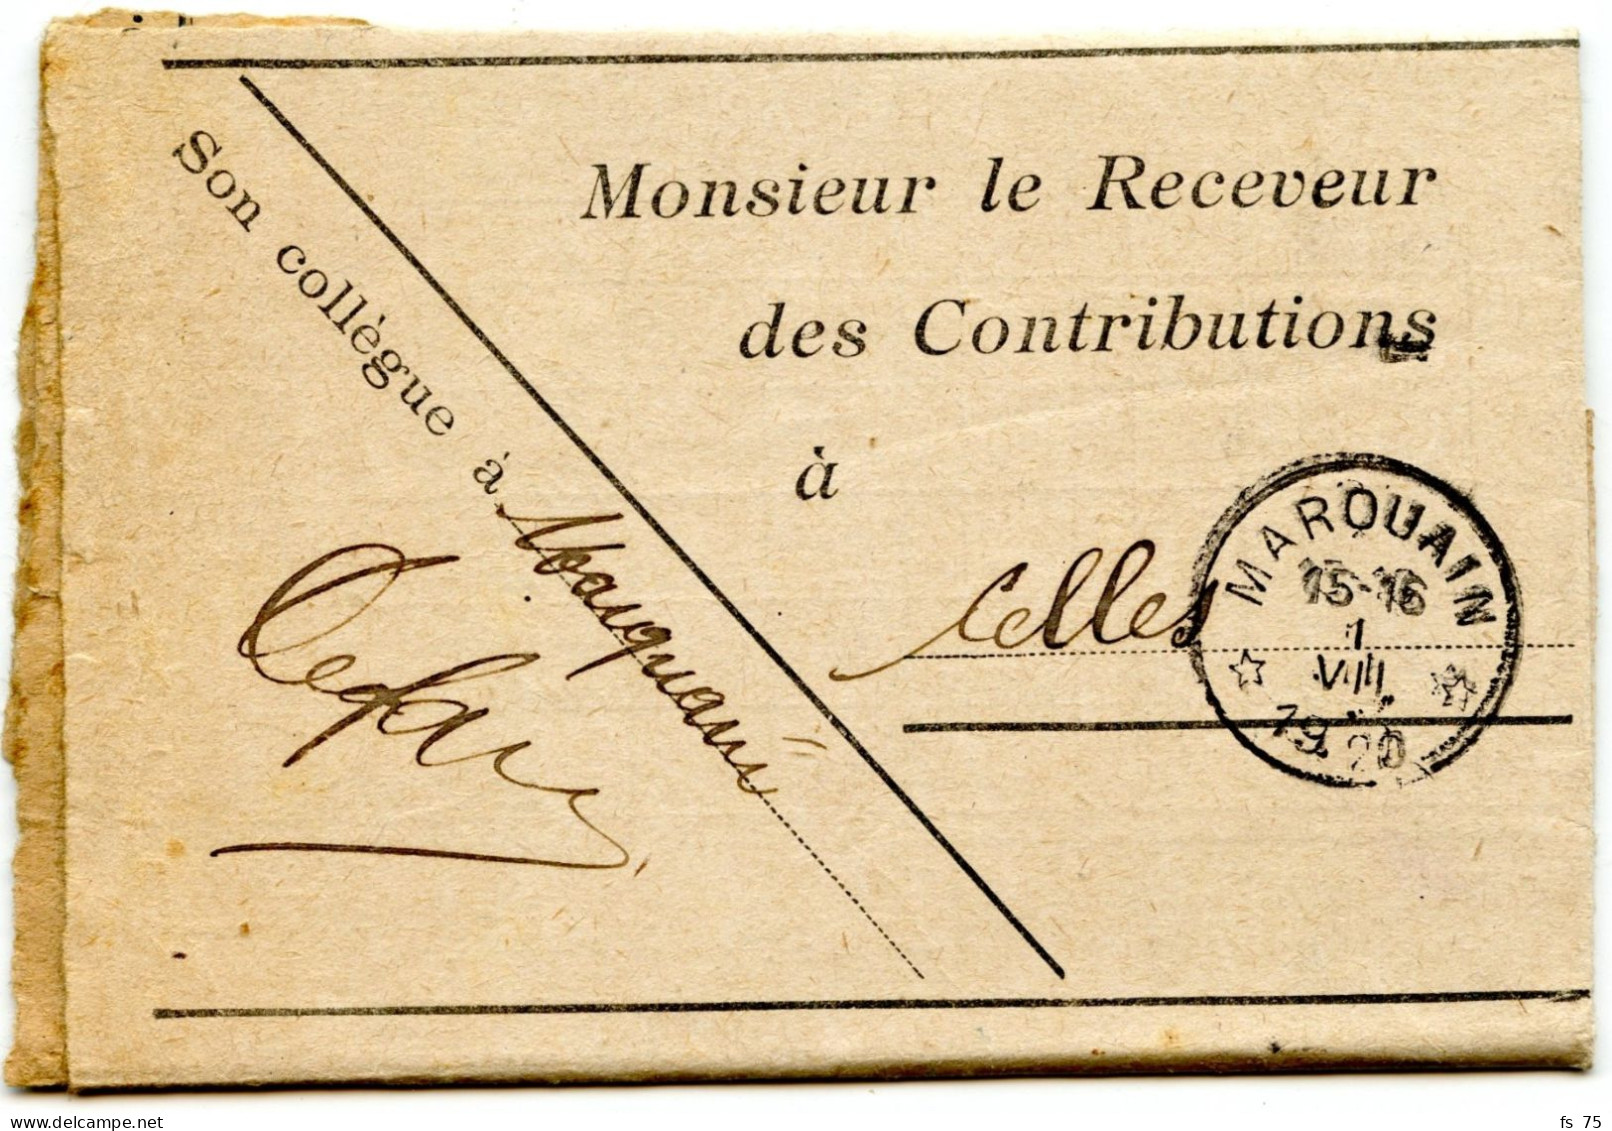 BELGIQUE - SIMPLE CERCLE RELAIS A ETOILES MARQUAIN SUR LETTRE DE SERVICE, 1920 - Postmarks With Stars